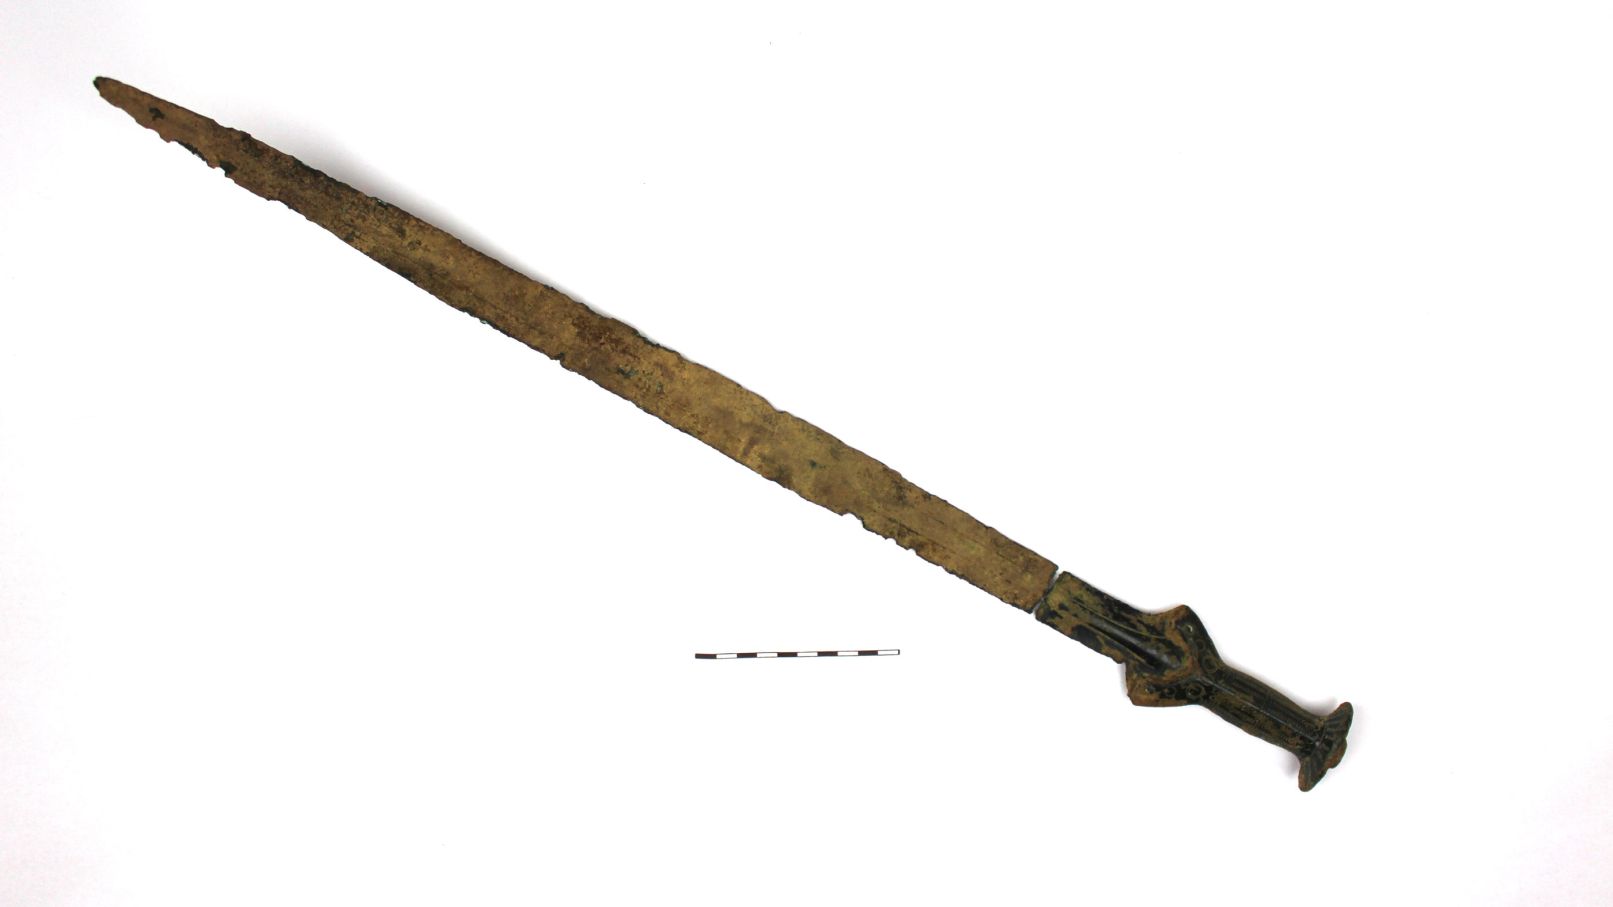 発見された青銅製の剣